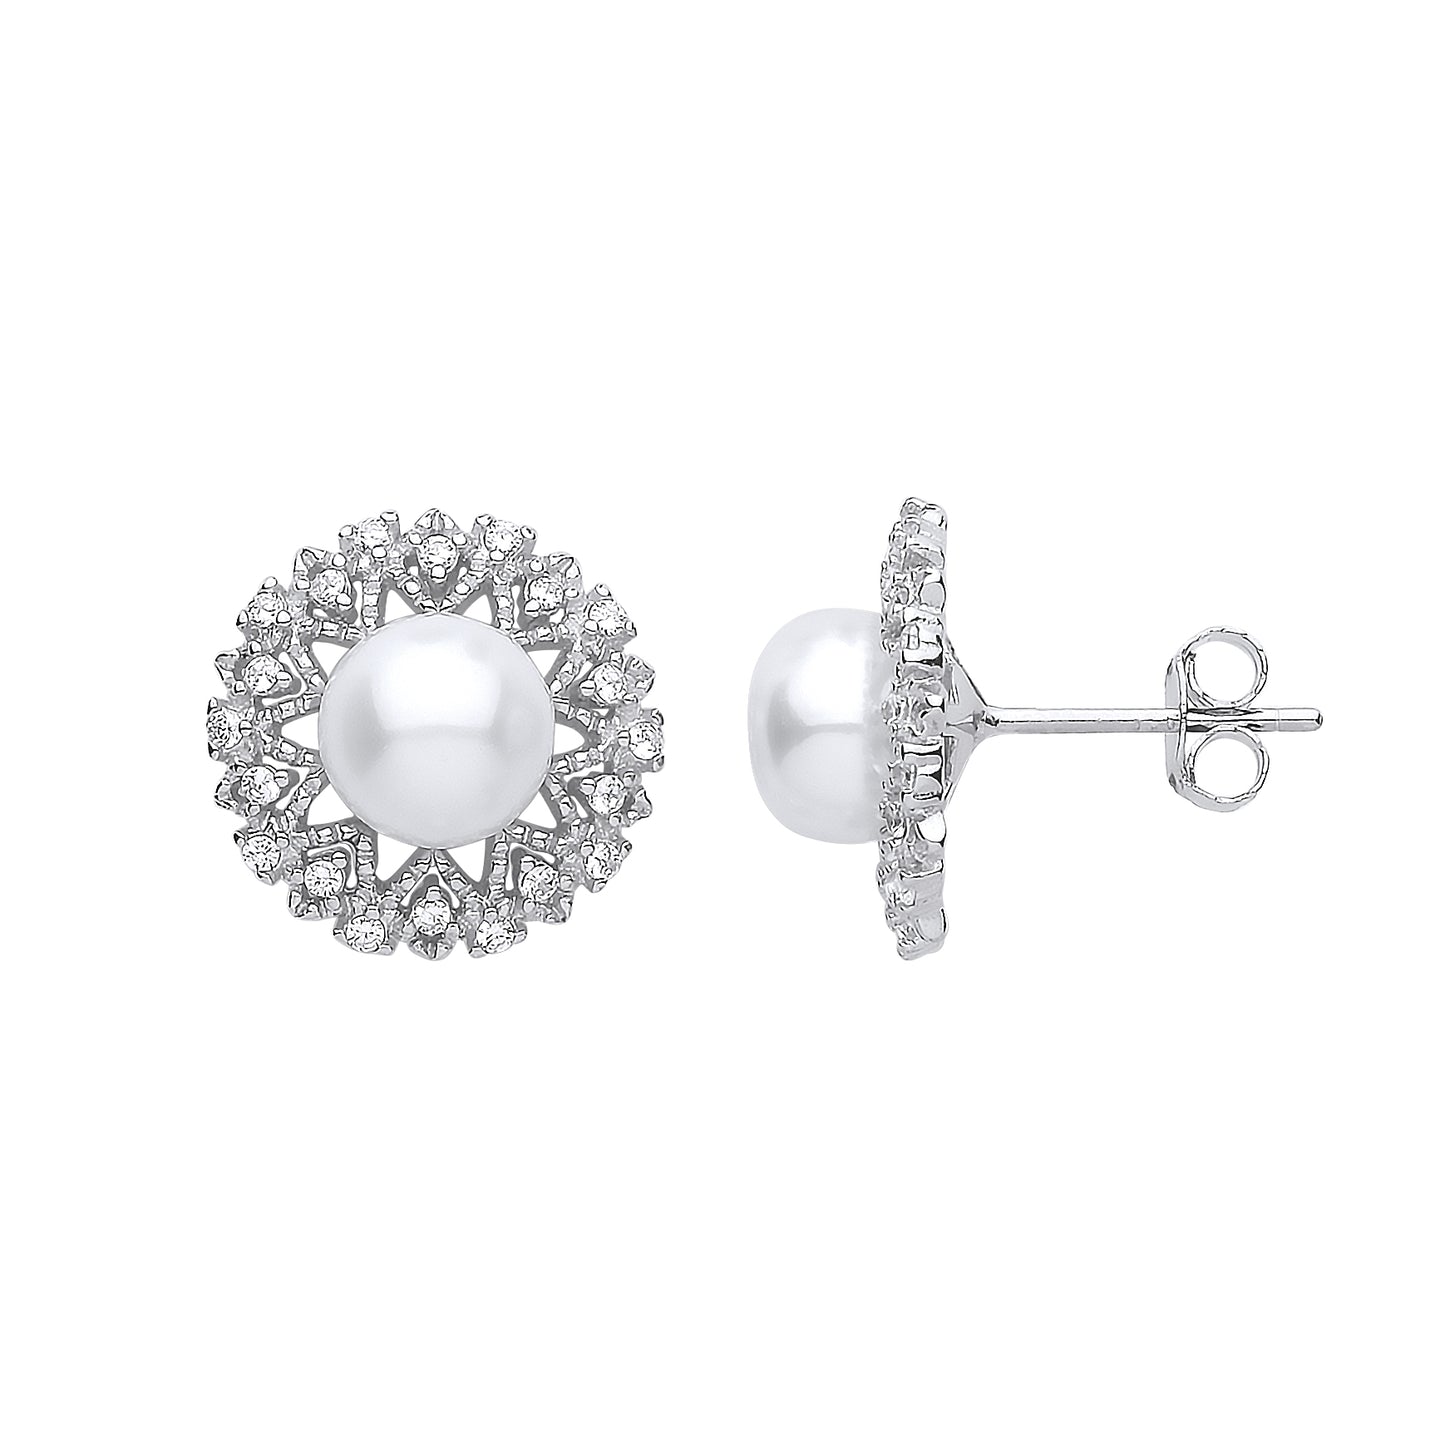 Silver  CZ Pearl Full Moon Sunburst Stud Earrings 7mm - GVE902